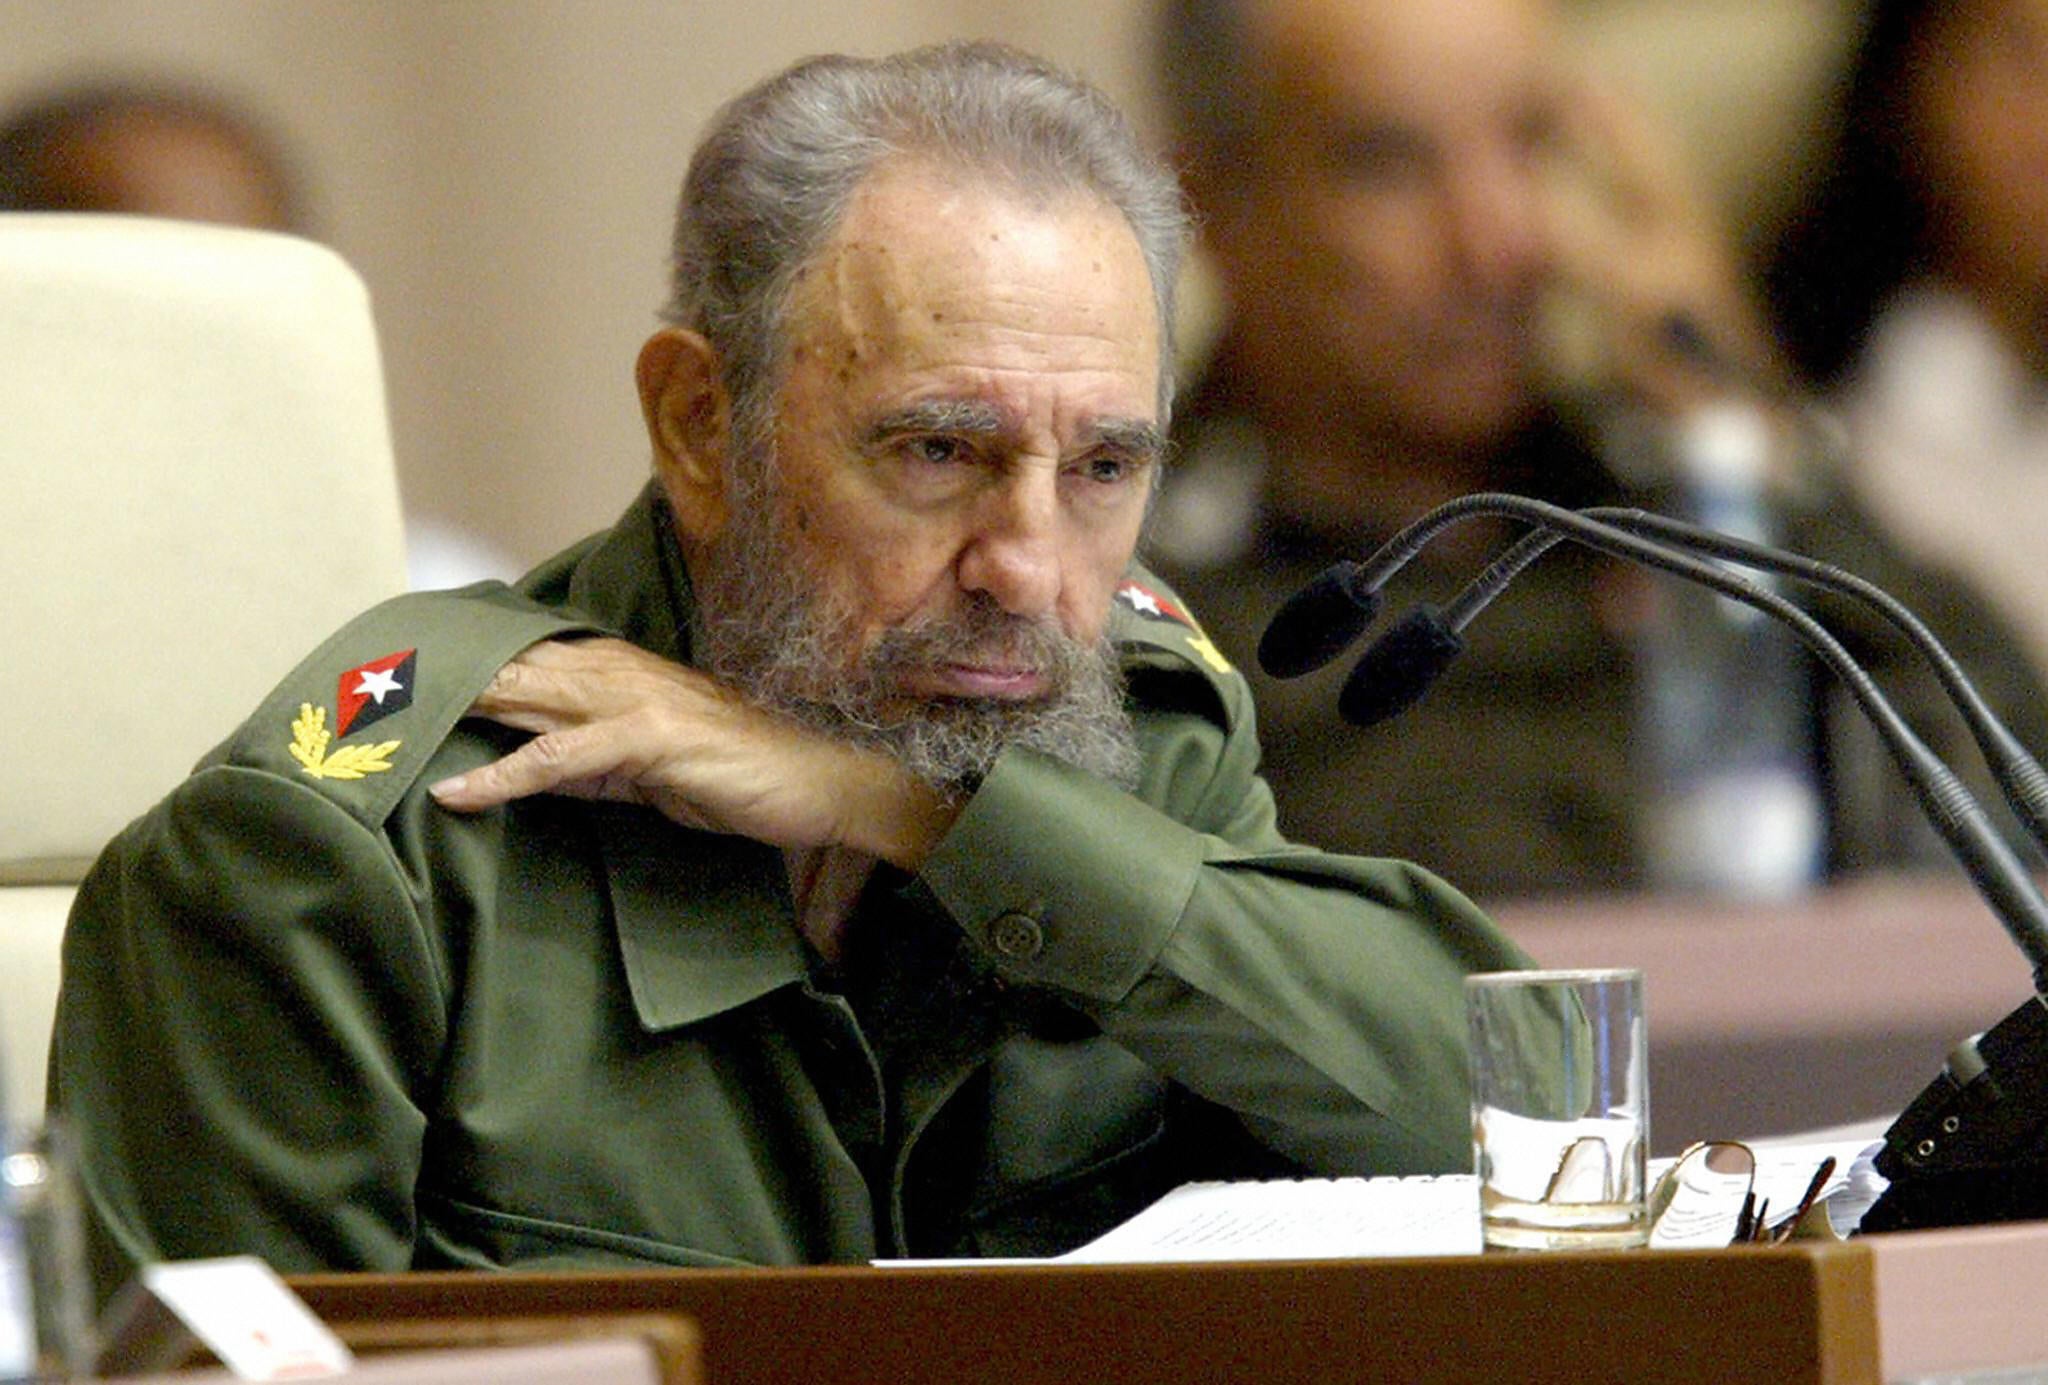 Fidel Castro, fotografiado en 2005, llevaba siempre su uniforme cuando aparecía en público